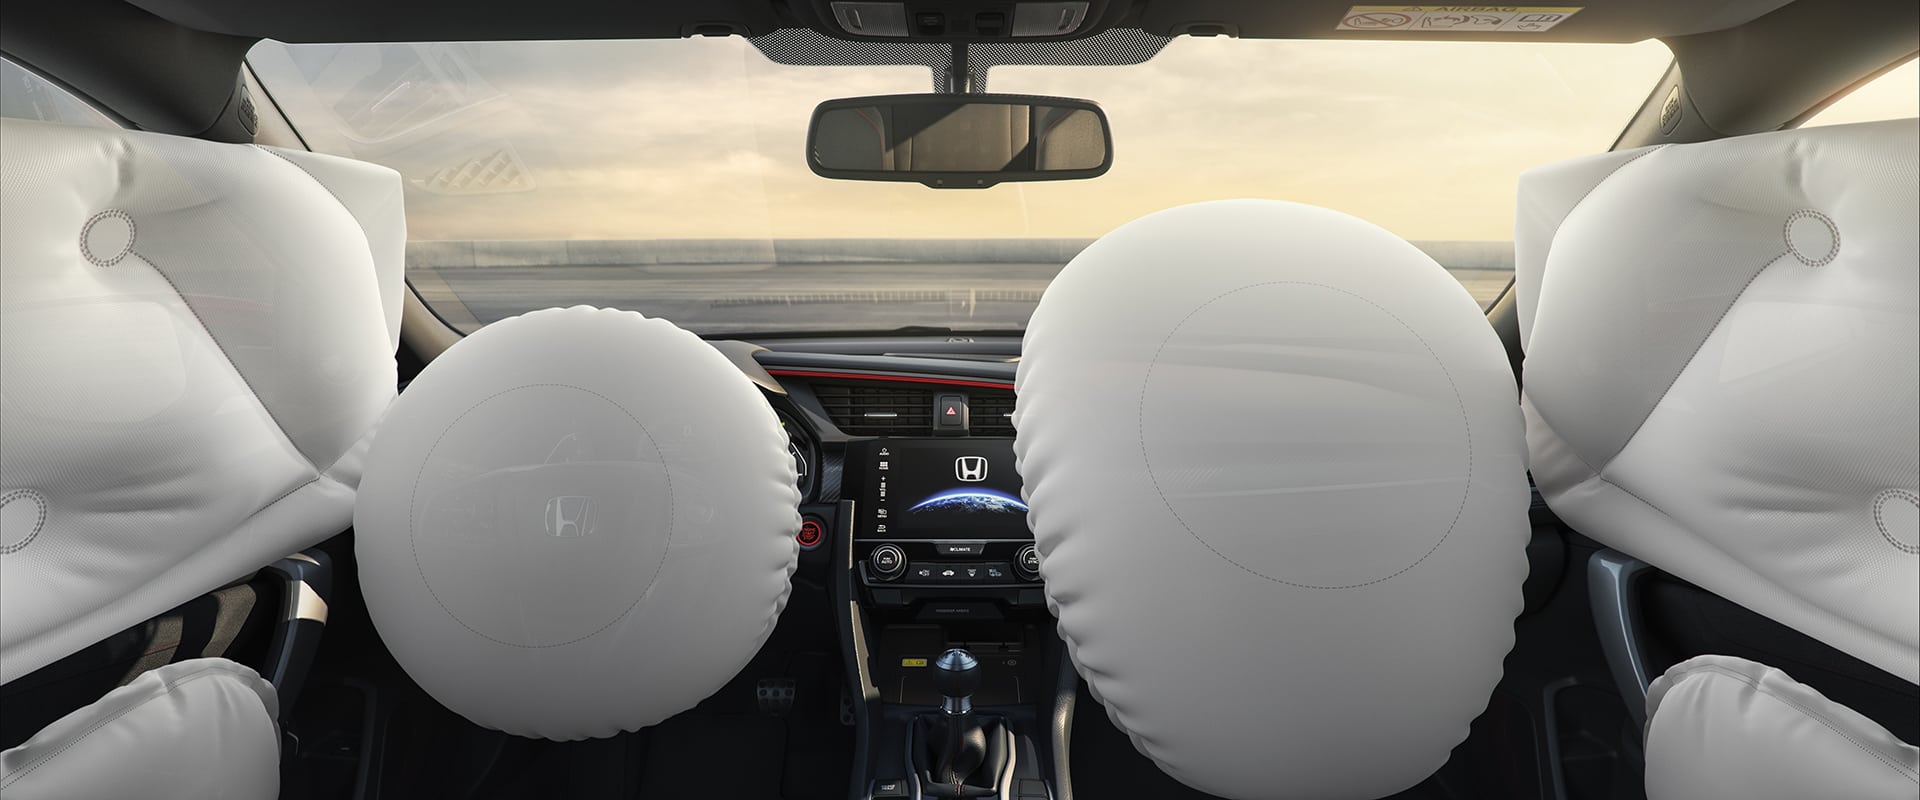 Recall de airbag entenda porque é importante fazer Blog da Nakata